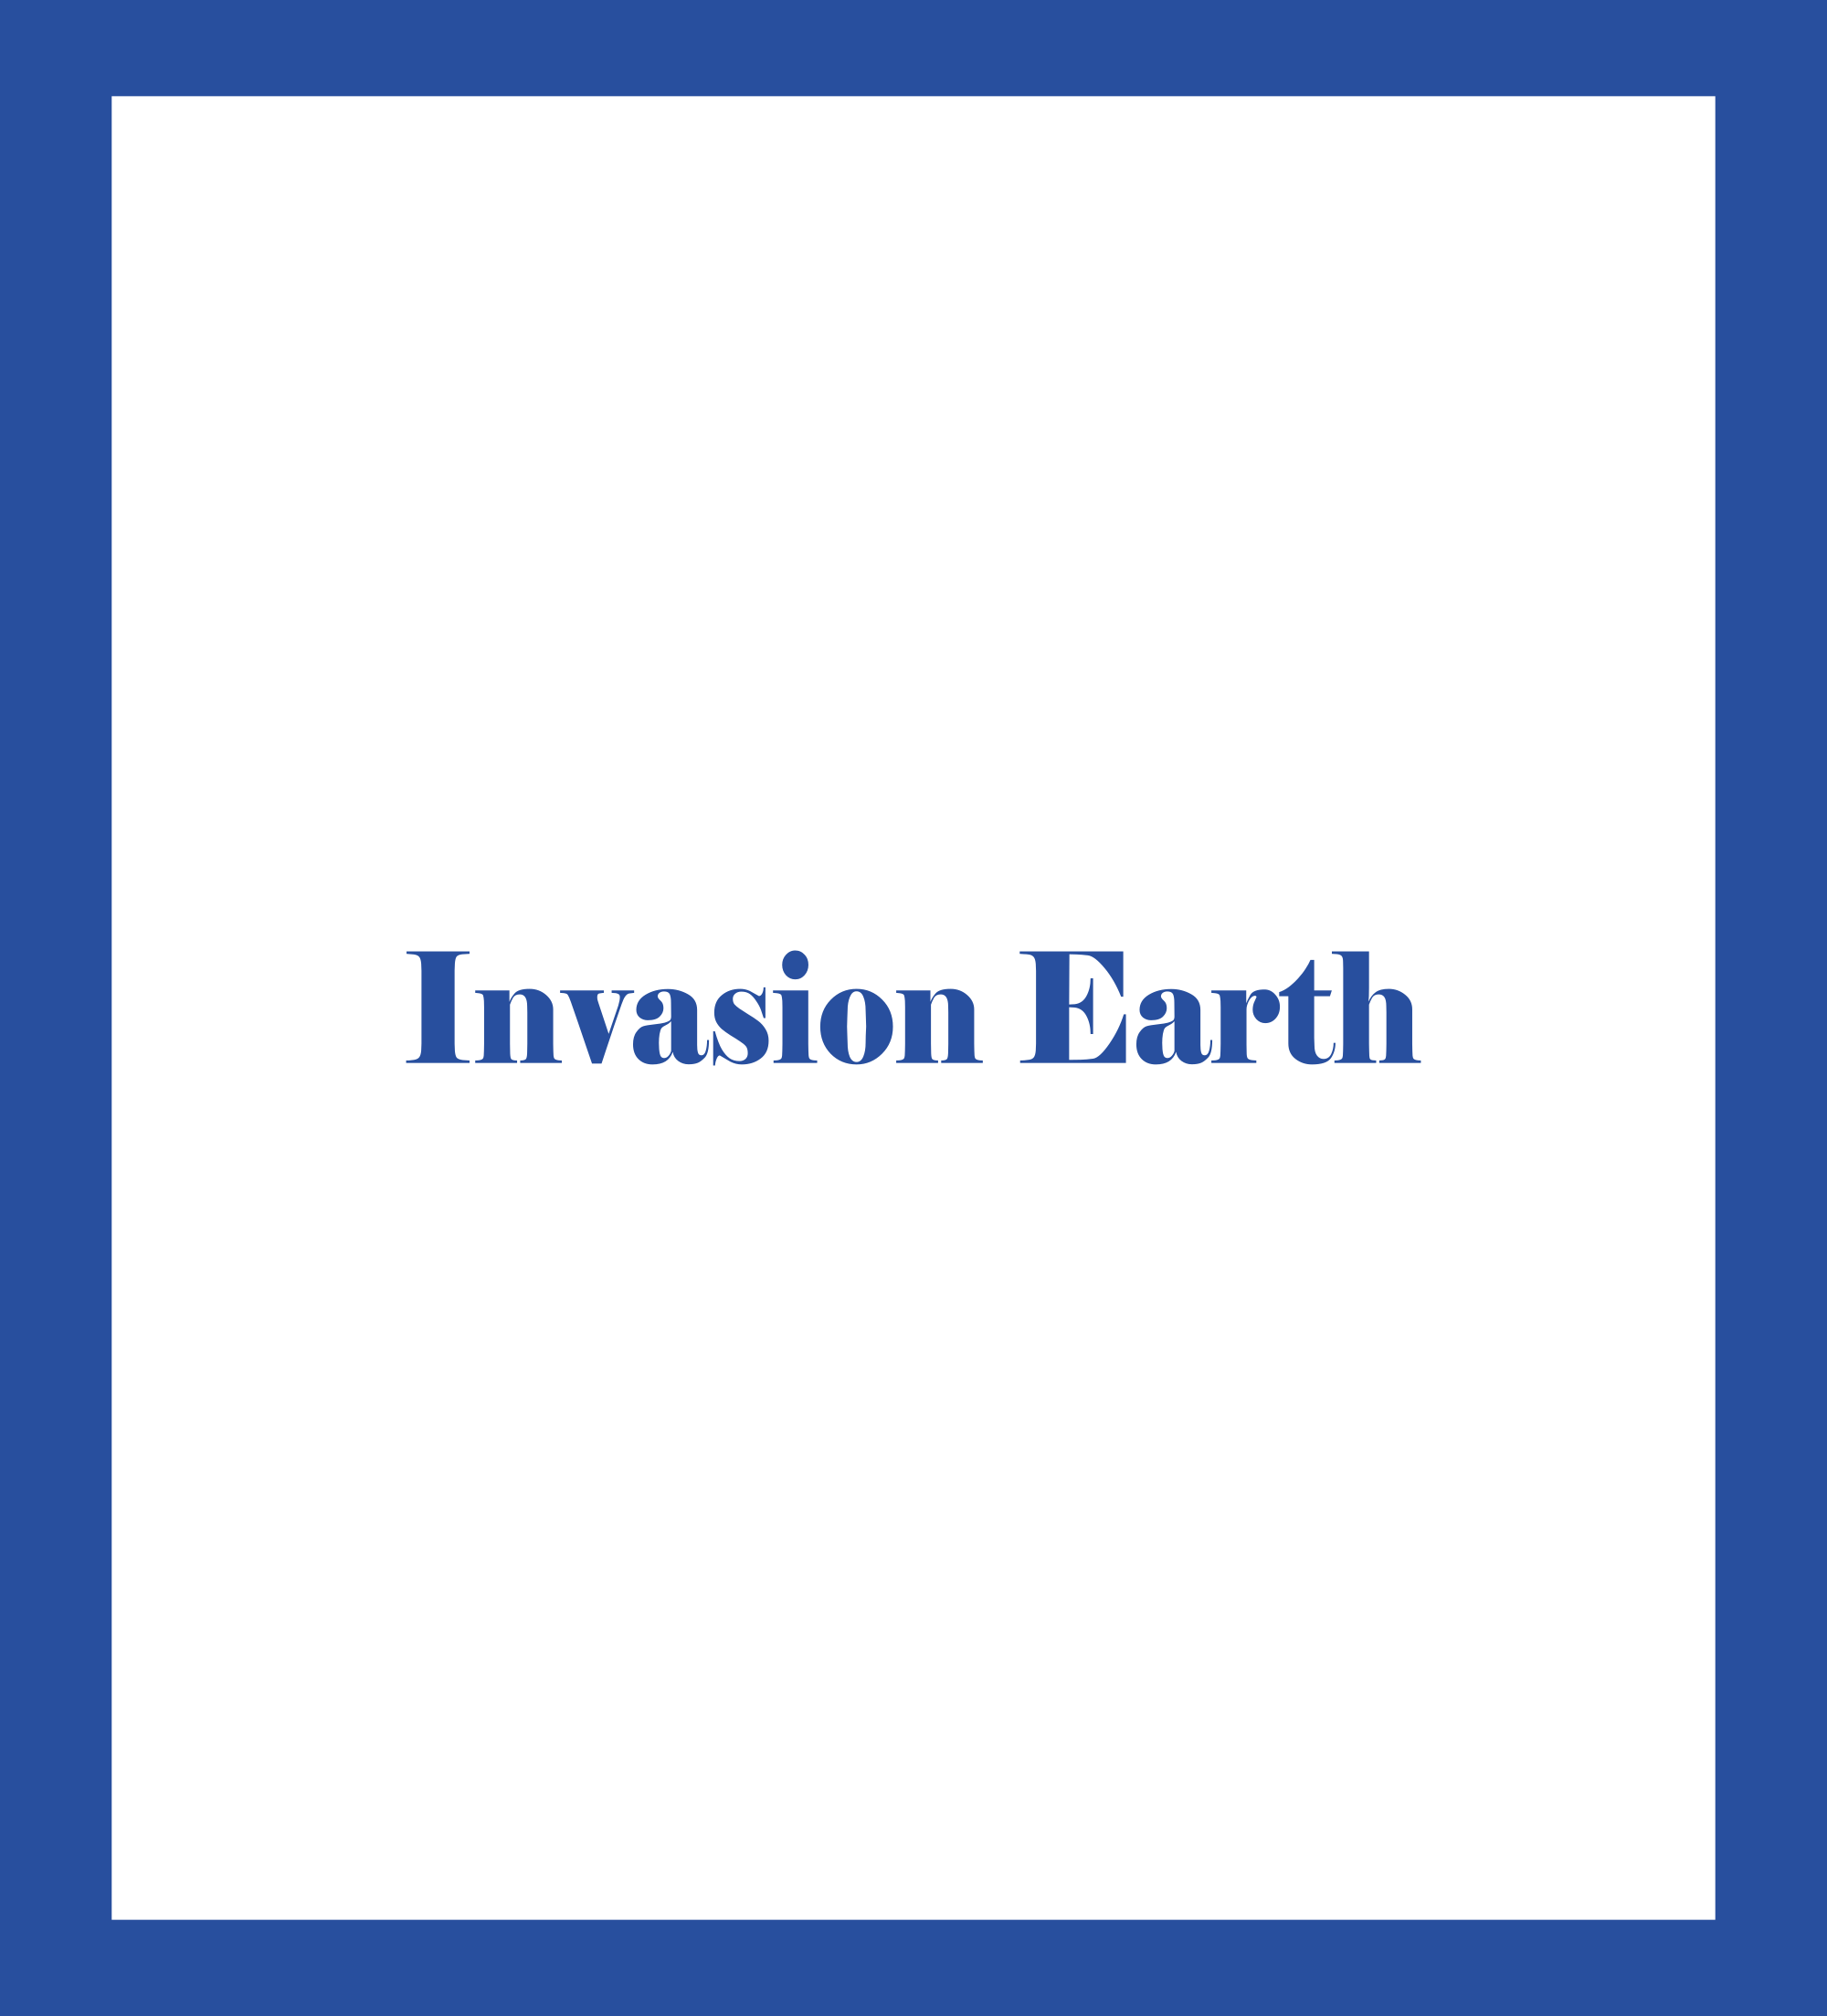 Caratula de Invasion Earth (Invasión extraterrestre) 